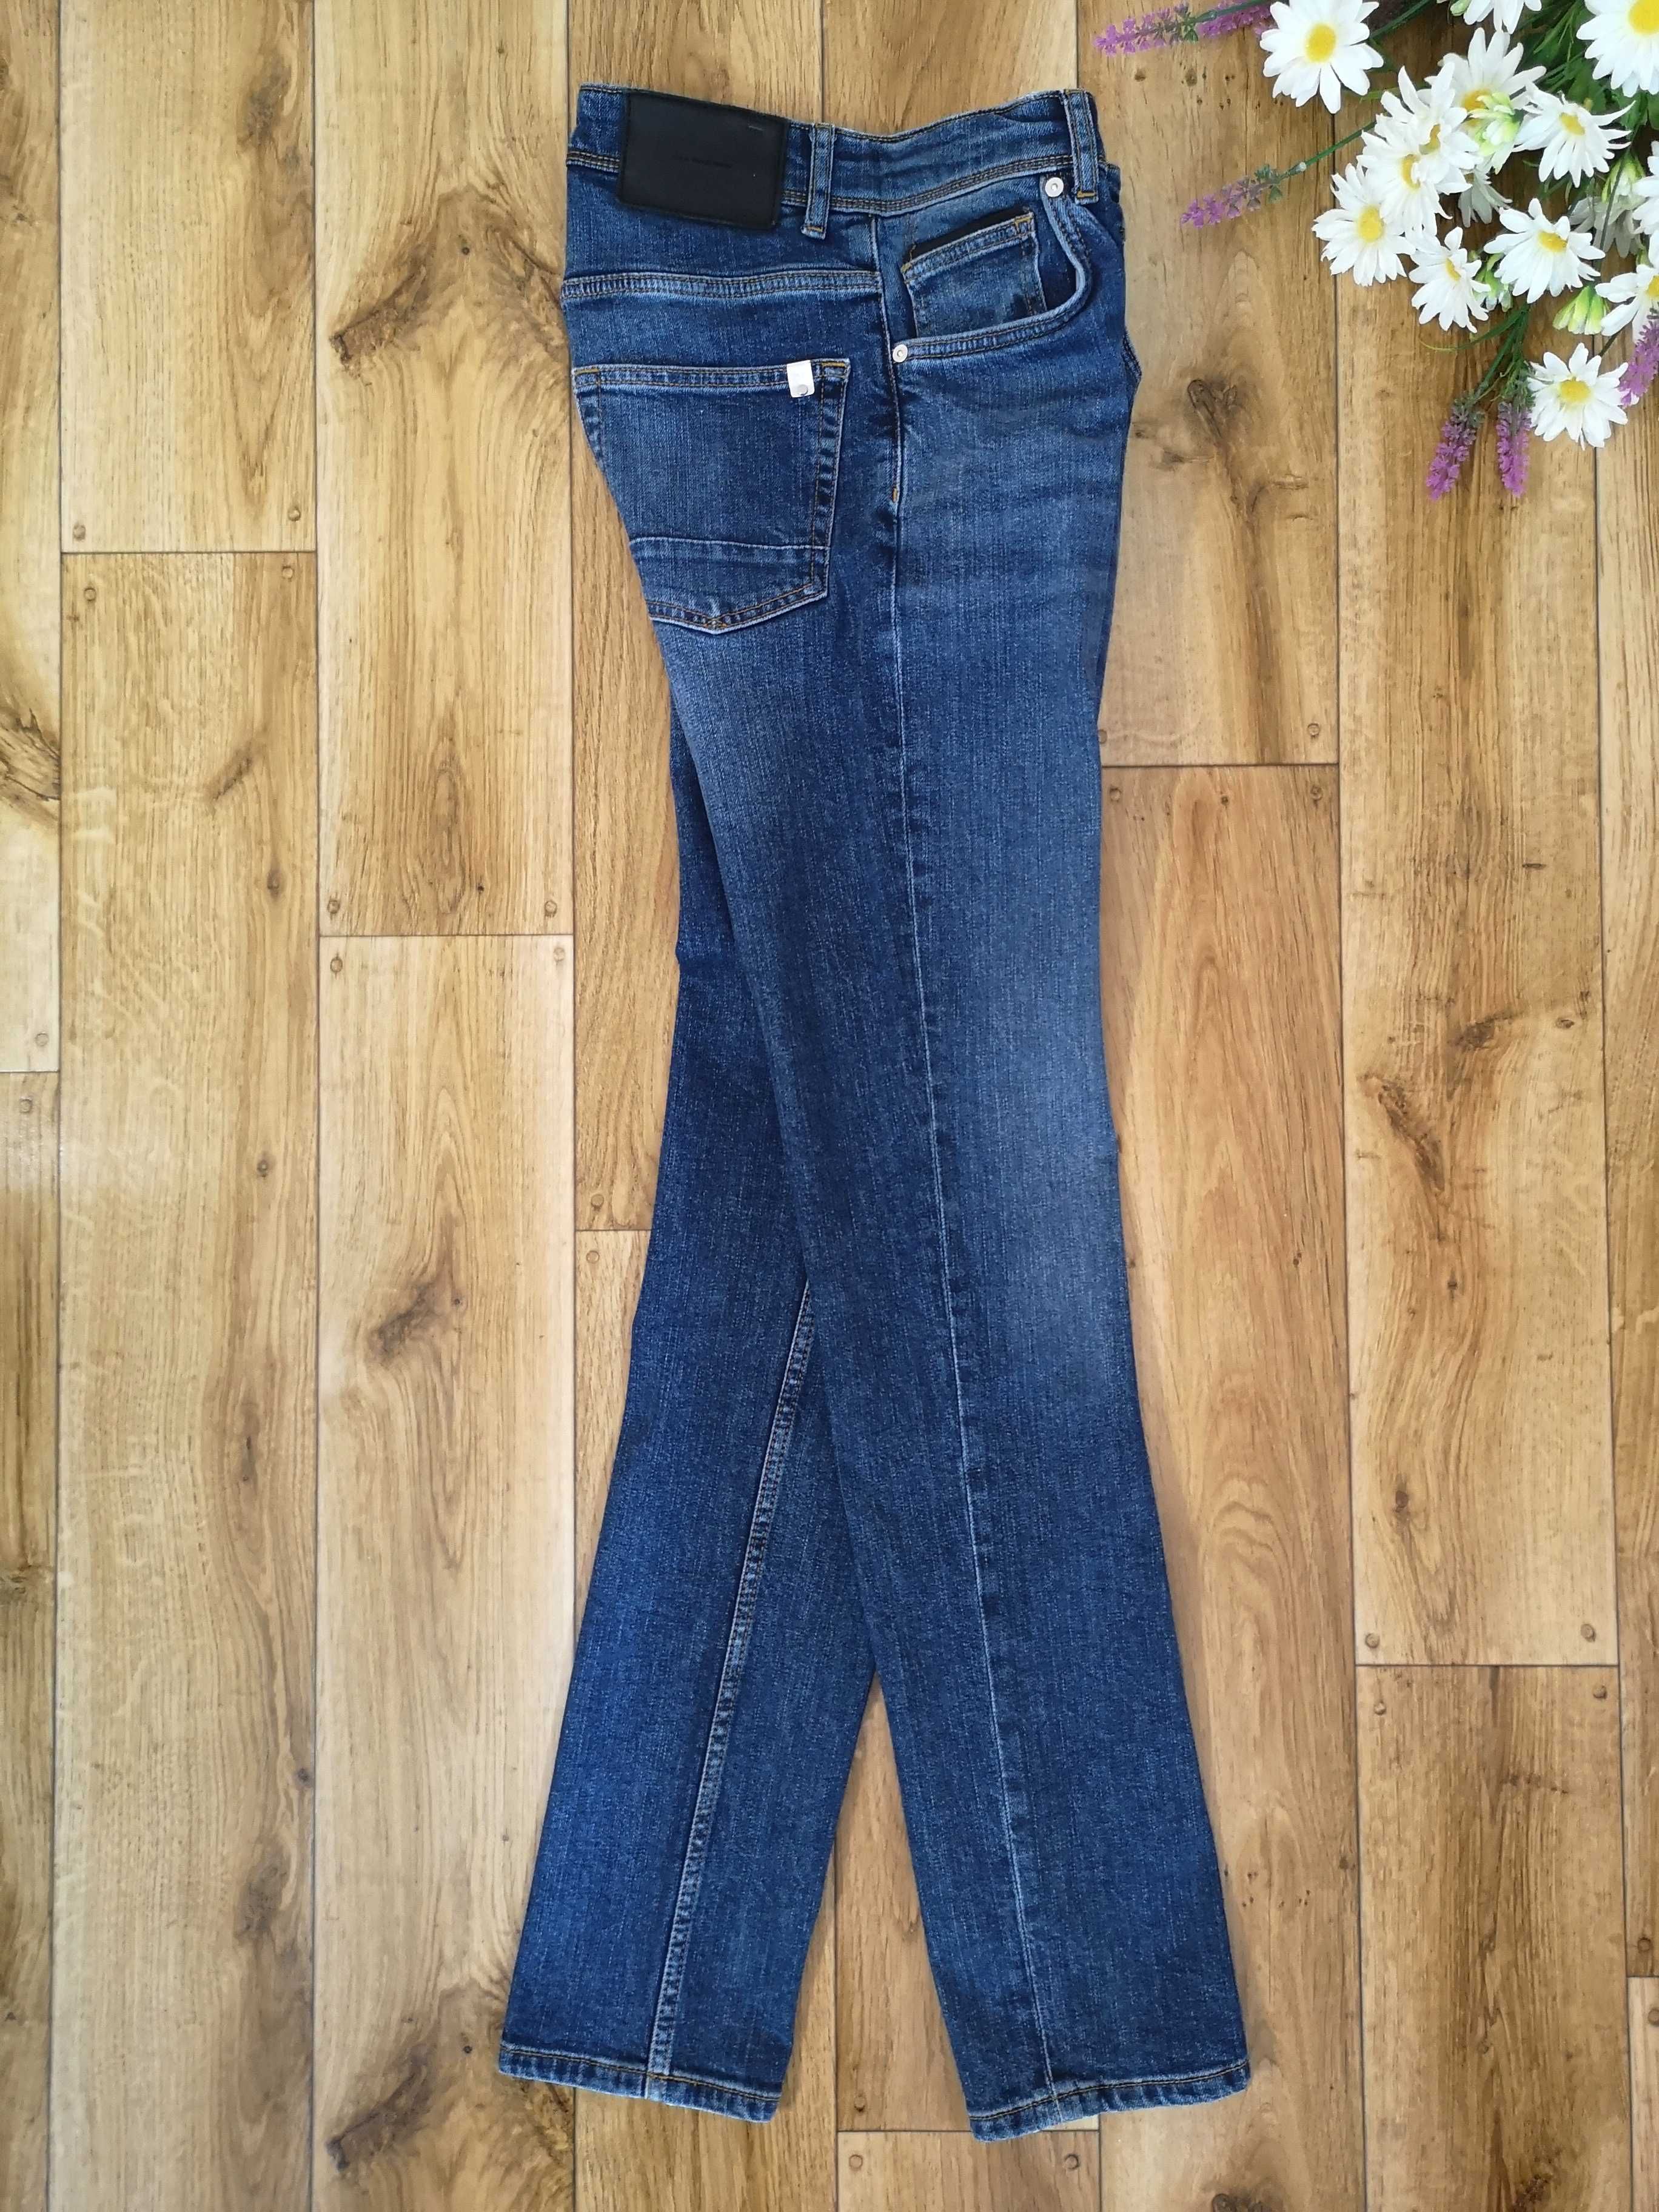 Jeansy męskie młodzieżowe slim fit Zara r.38 (S/M)